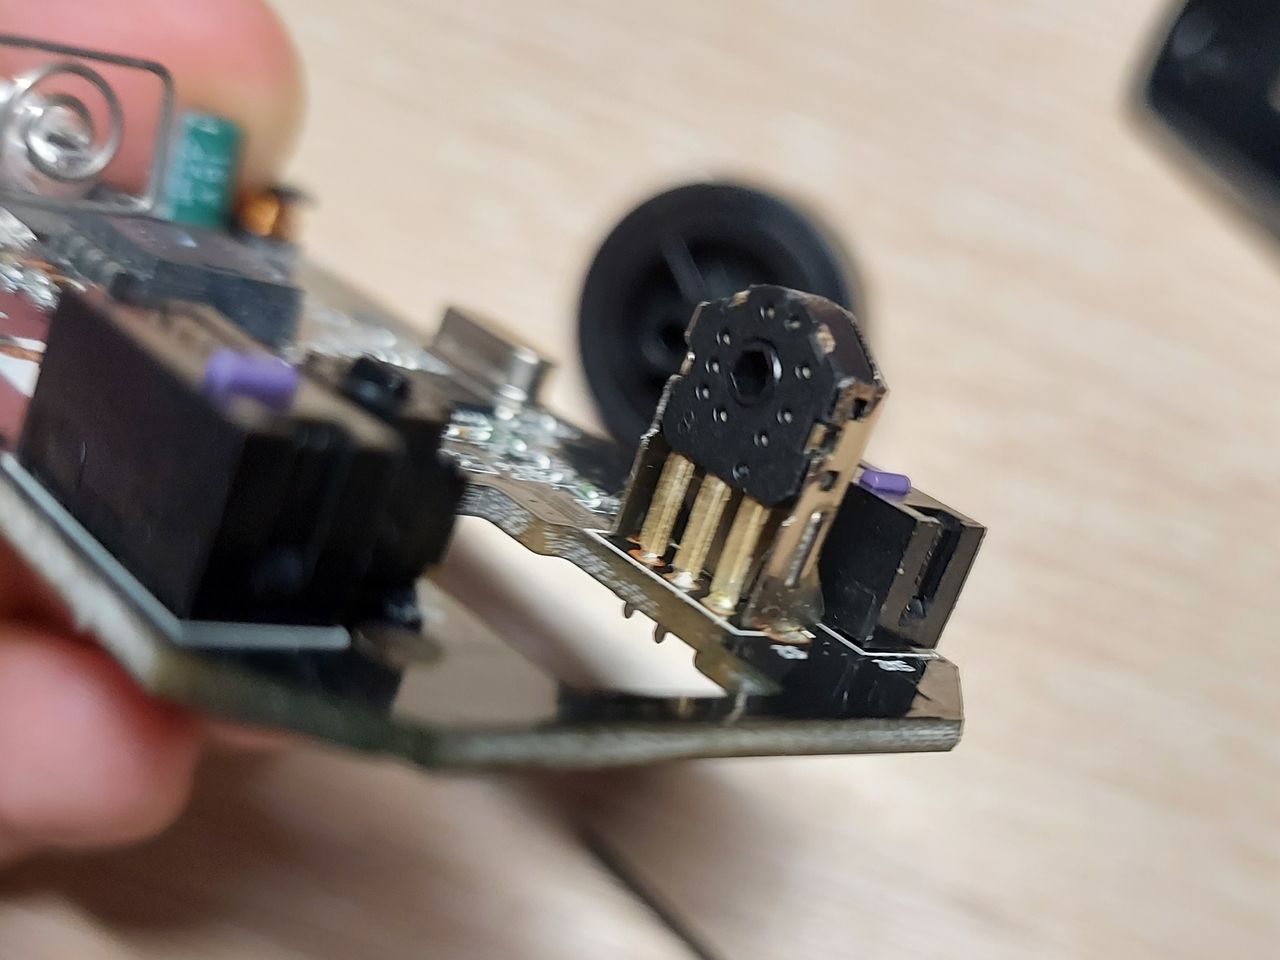 Mouse wheel repair - 10